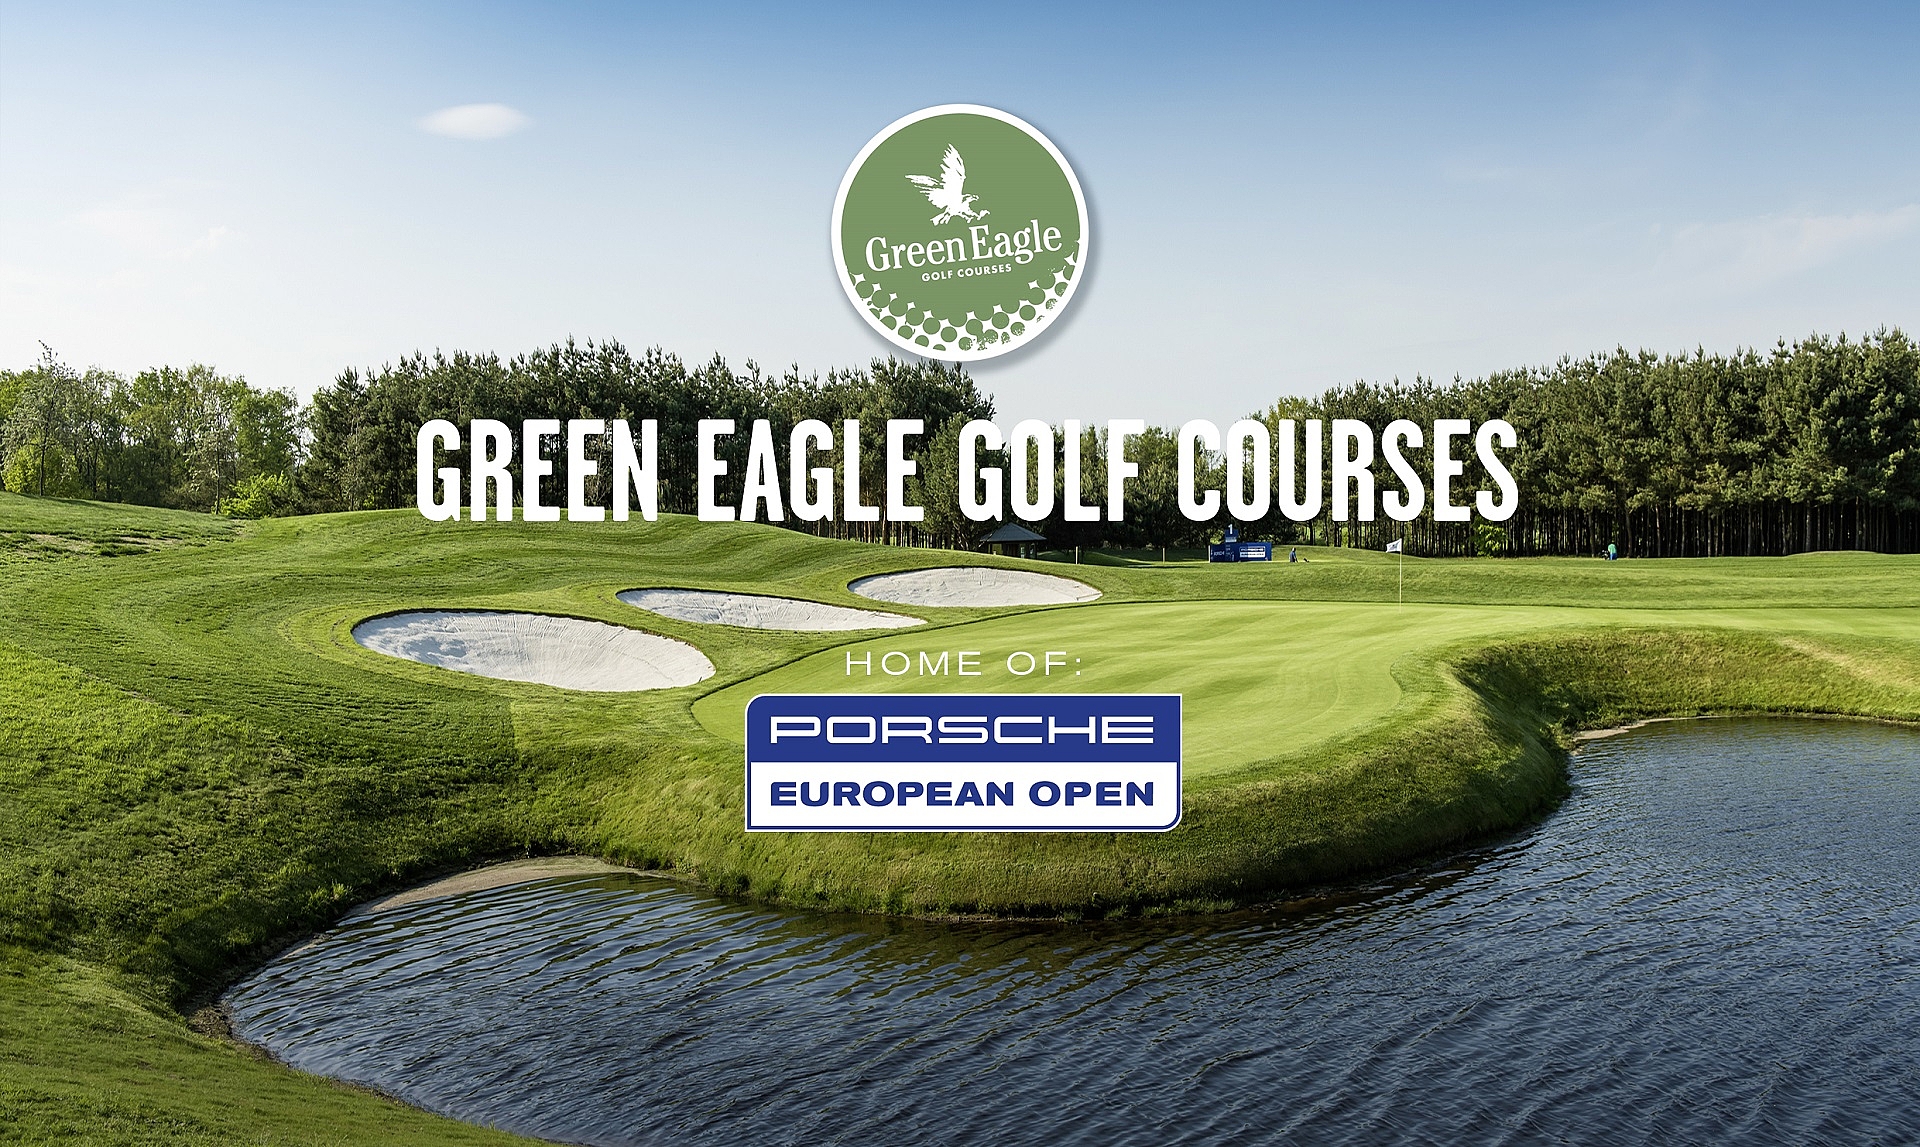 Green Eagle Golf Club